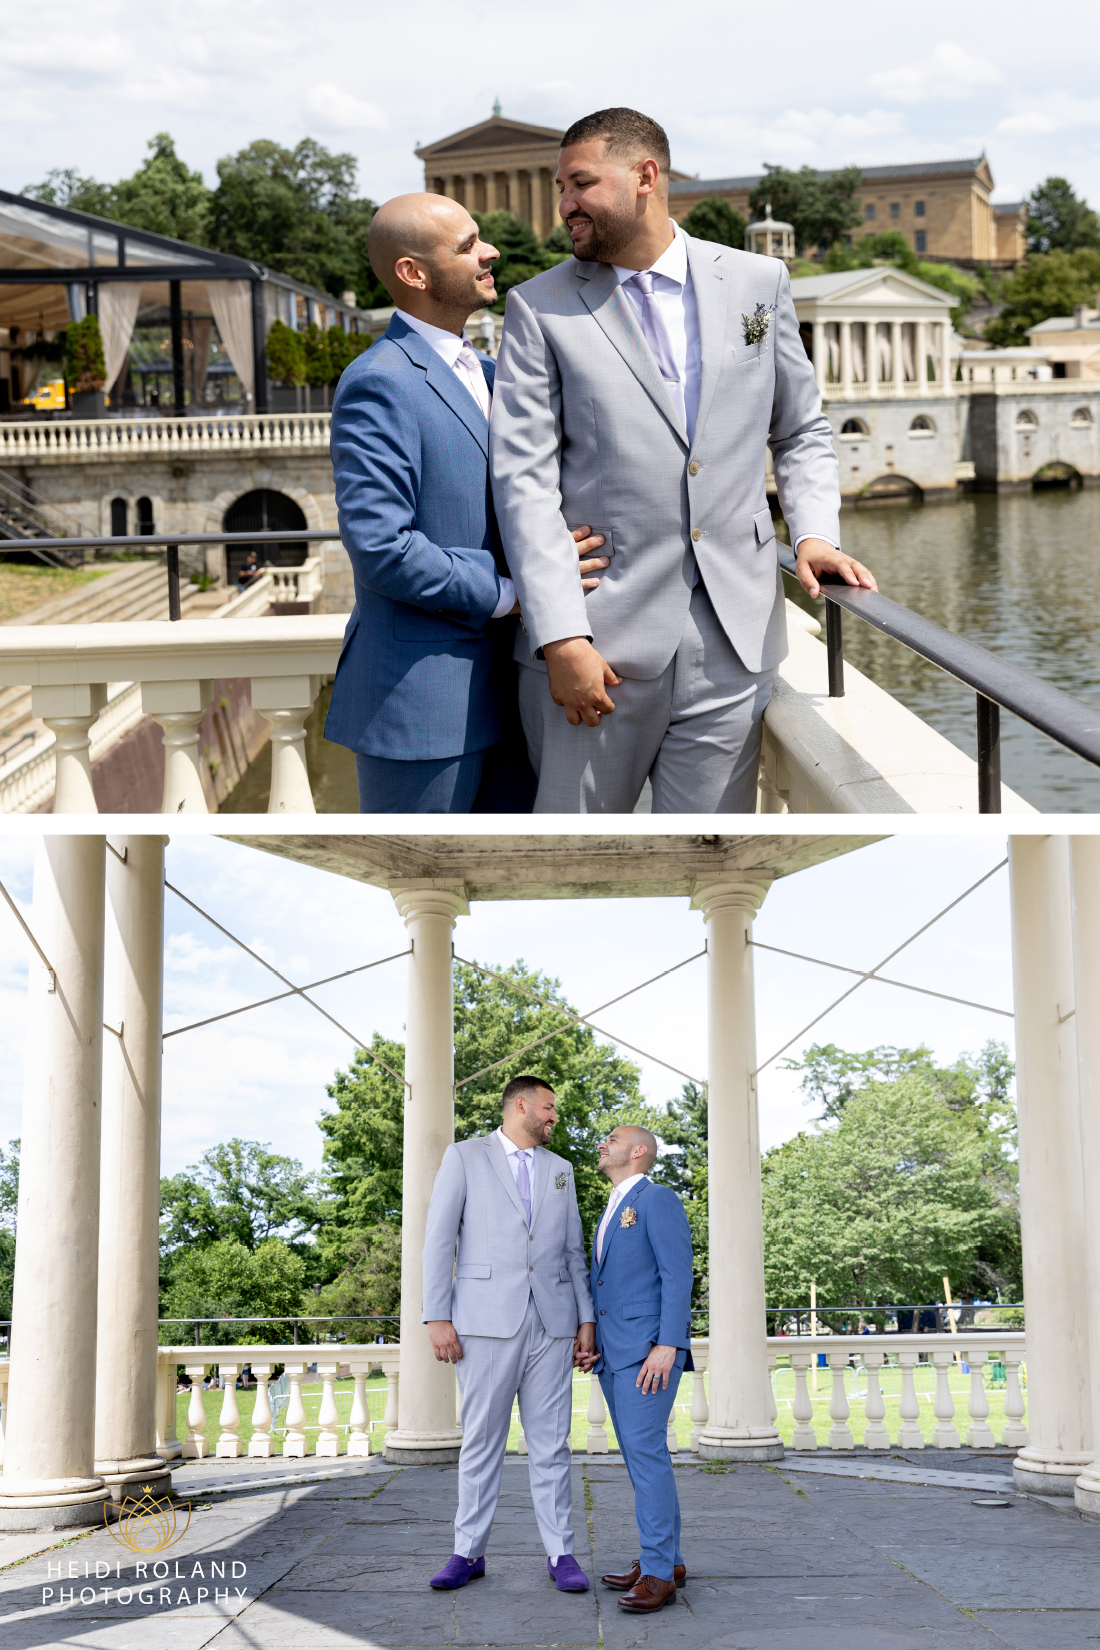 Gazebo wedding photos with Philadelphia